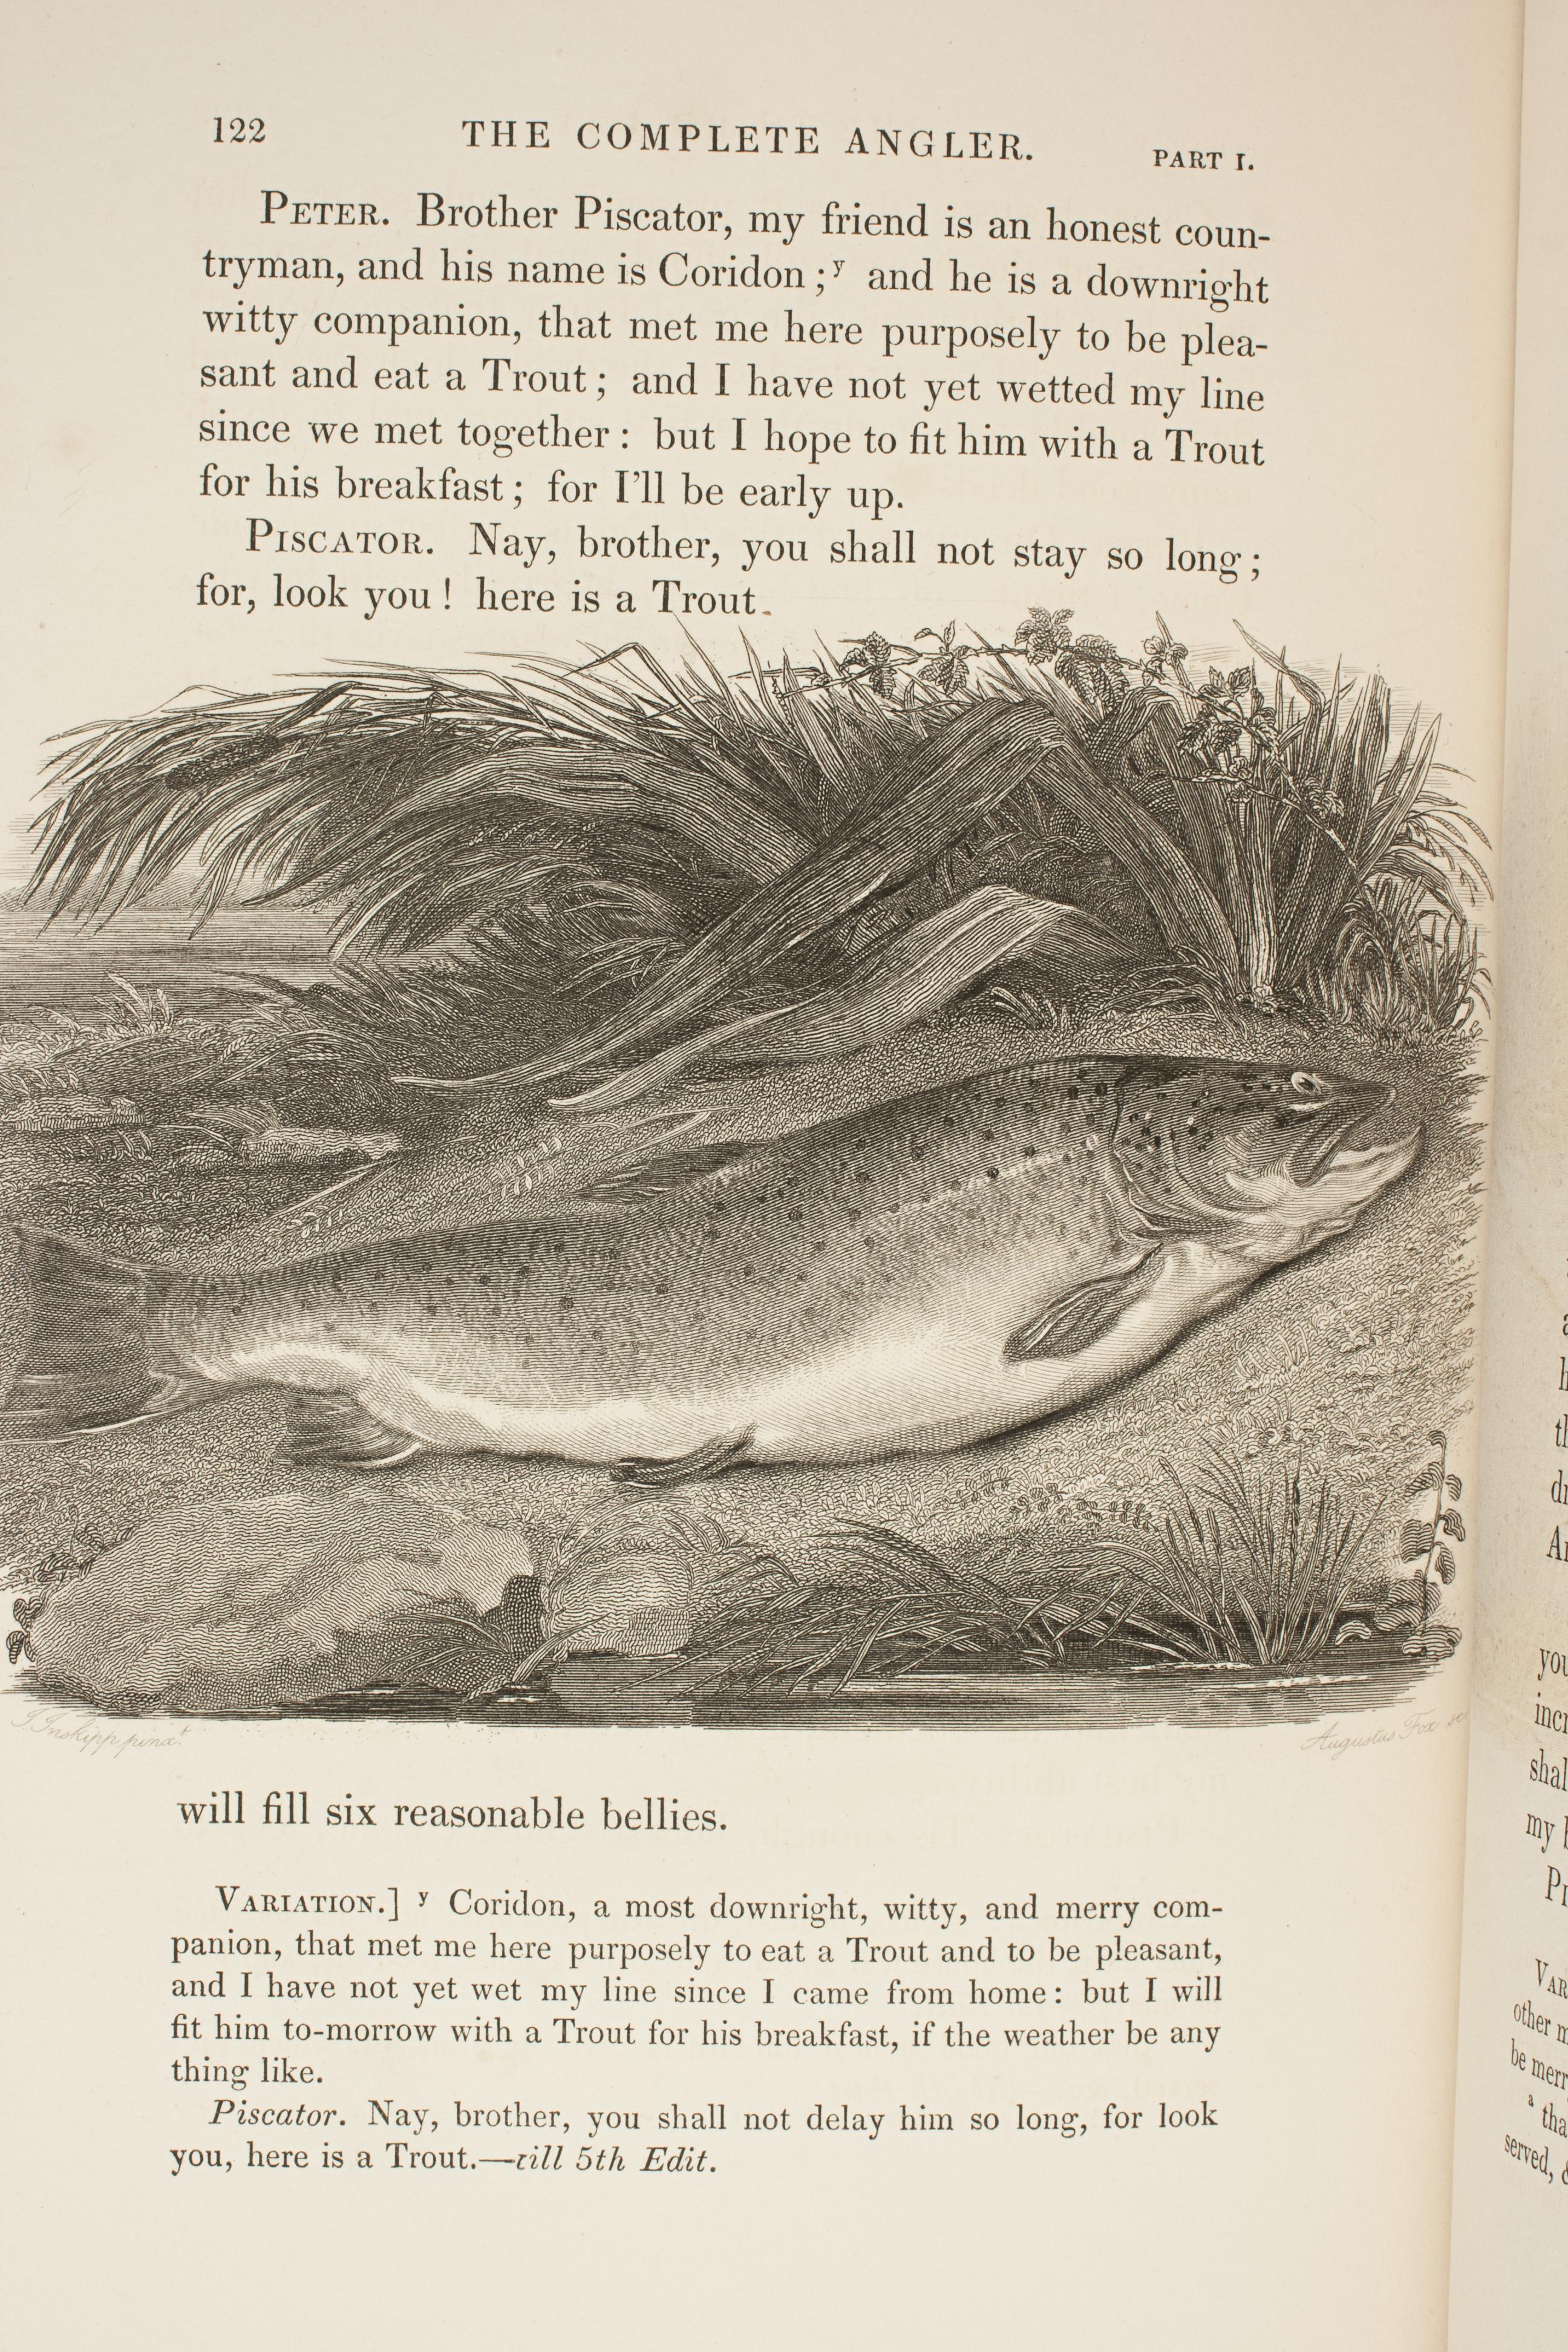 Complete Angler von Izaak Walton, Fischerbuch des 19. Jahrhunderts, zwei Bände (Mittleres 19. Jahrhundert)